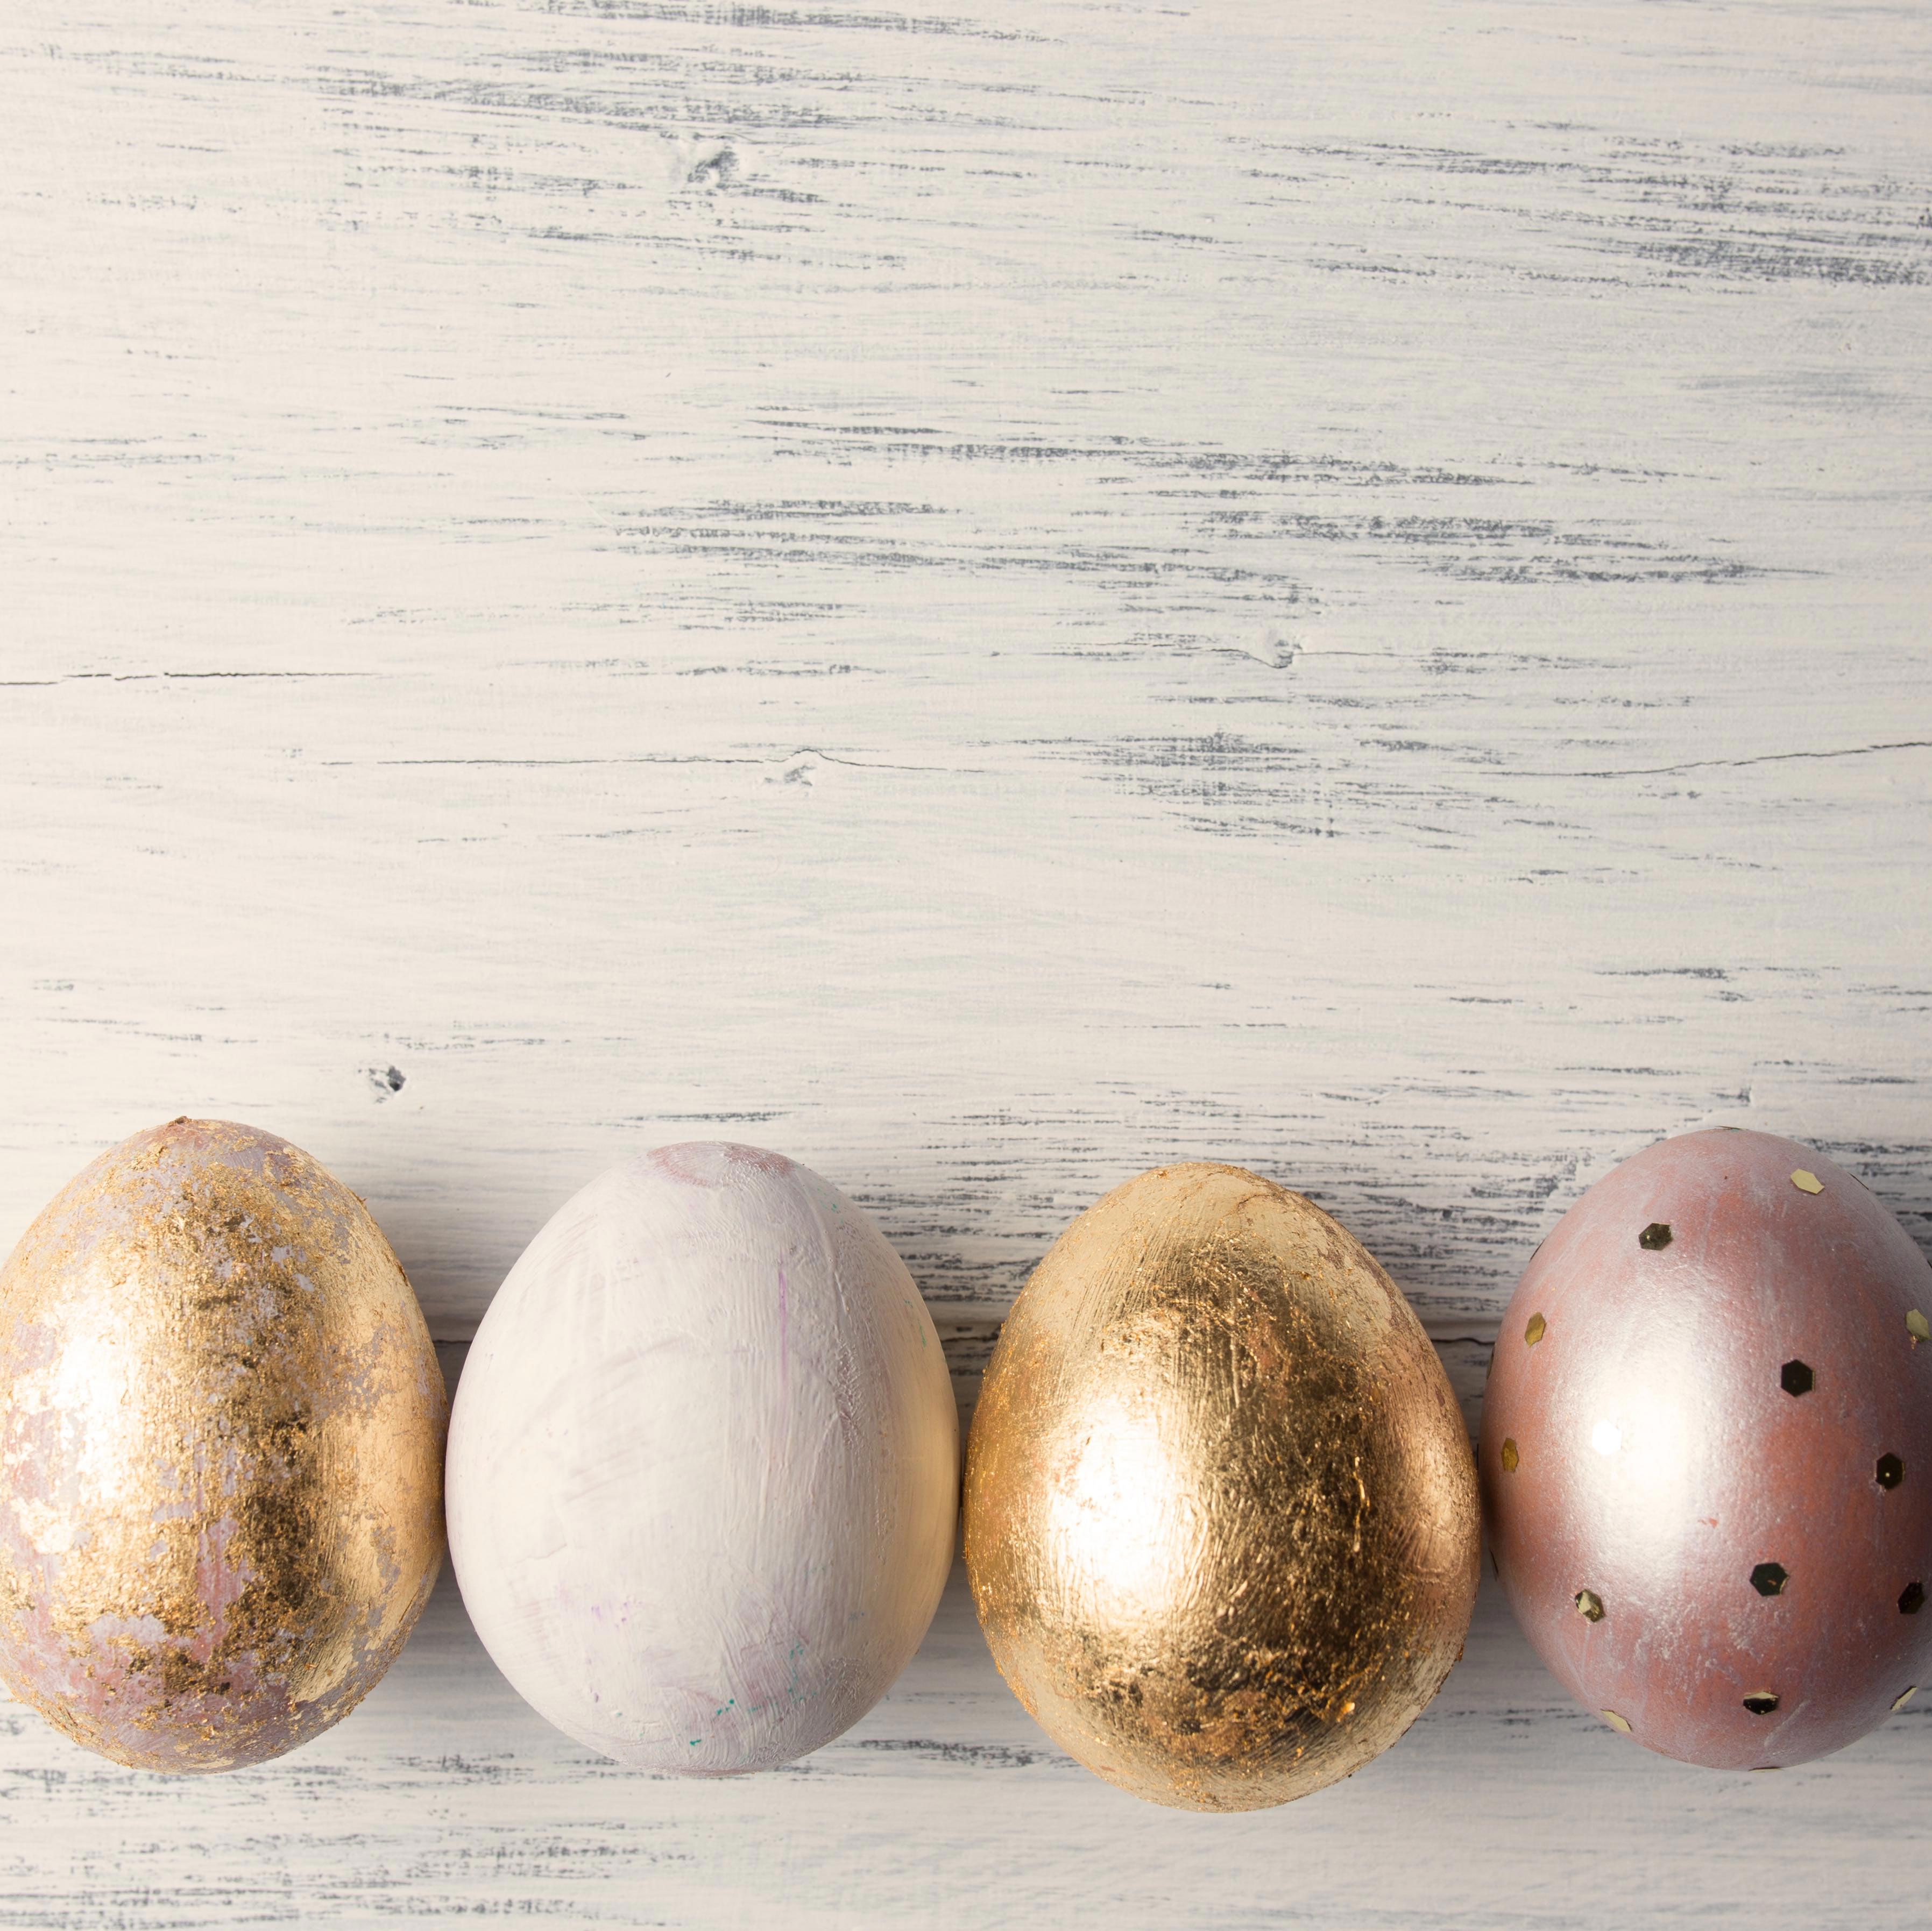 как покрасить яйца на Пасху, идеи для покраски яиц, пасхальные яйца